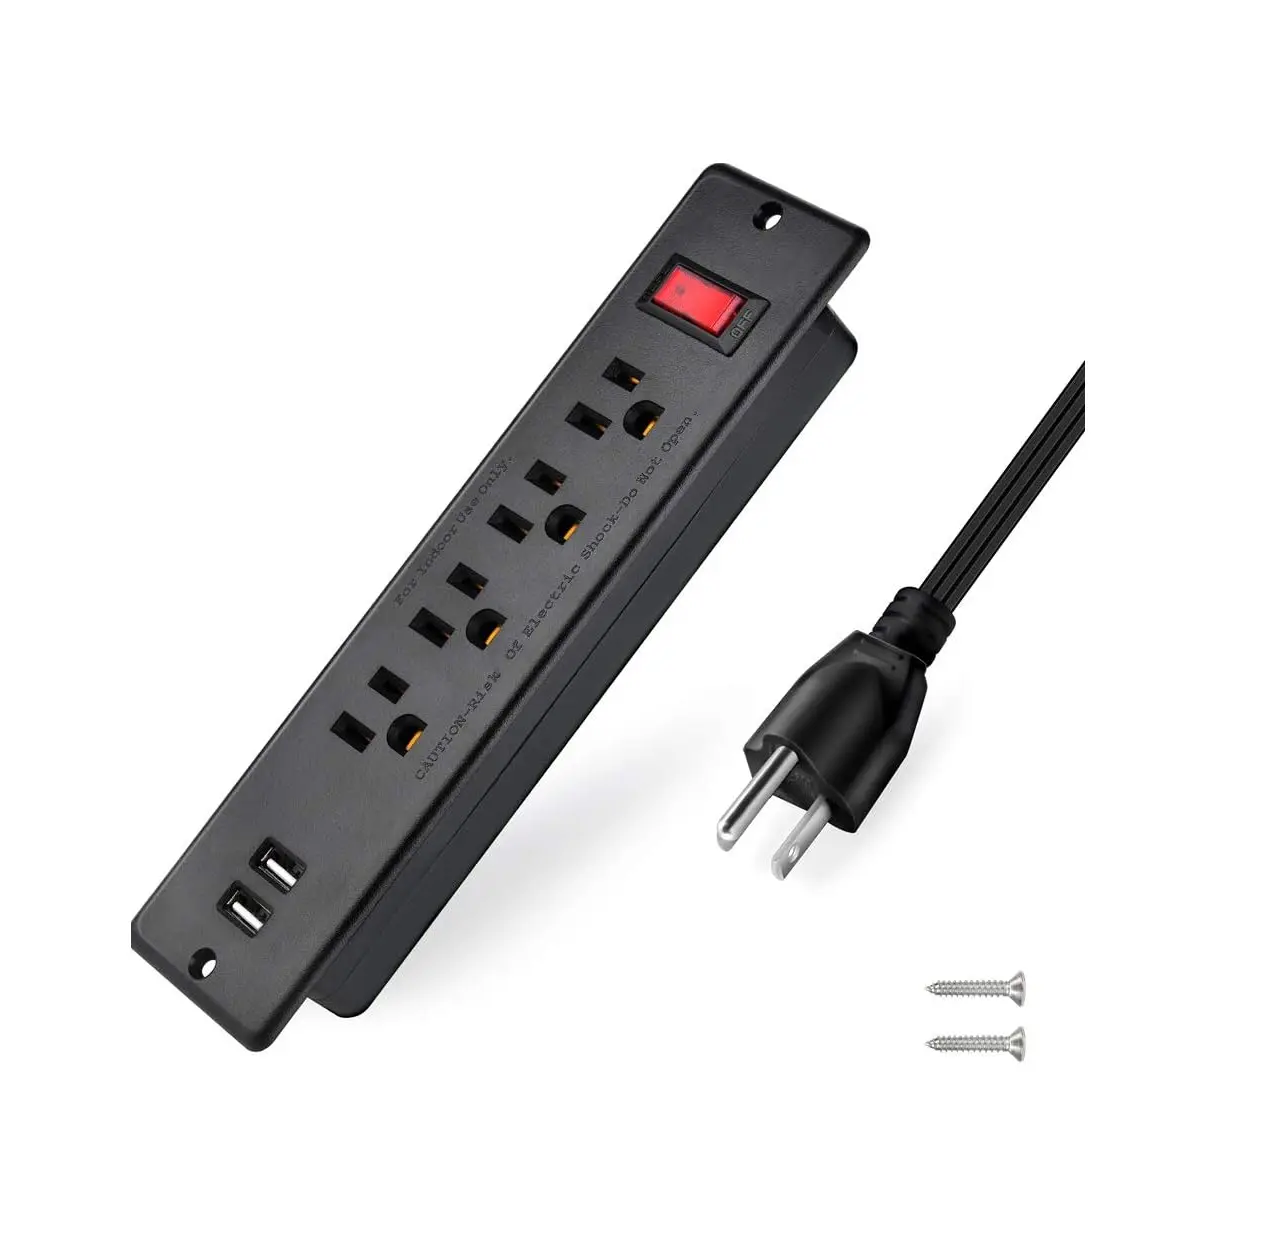 USB Power Strip lõm Ổ cắm điện mountable Outlet Extender nhiều bảo vệ 4 ổ cắm 2 USB hội nghị bàn